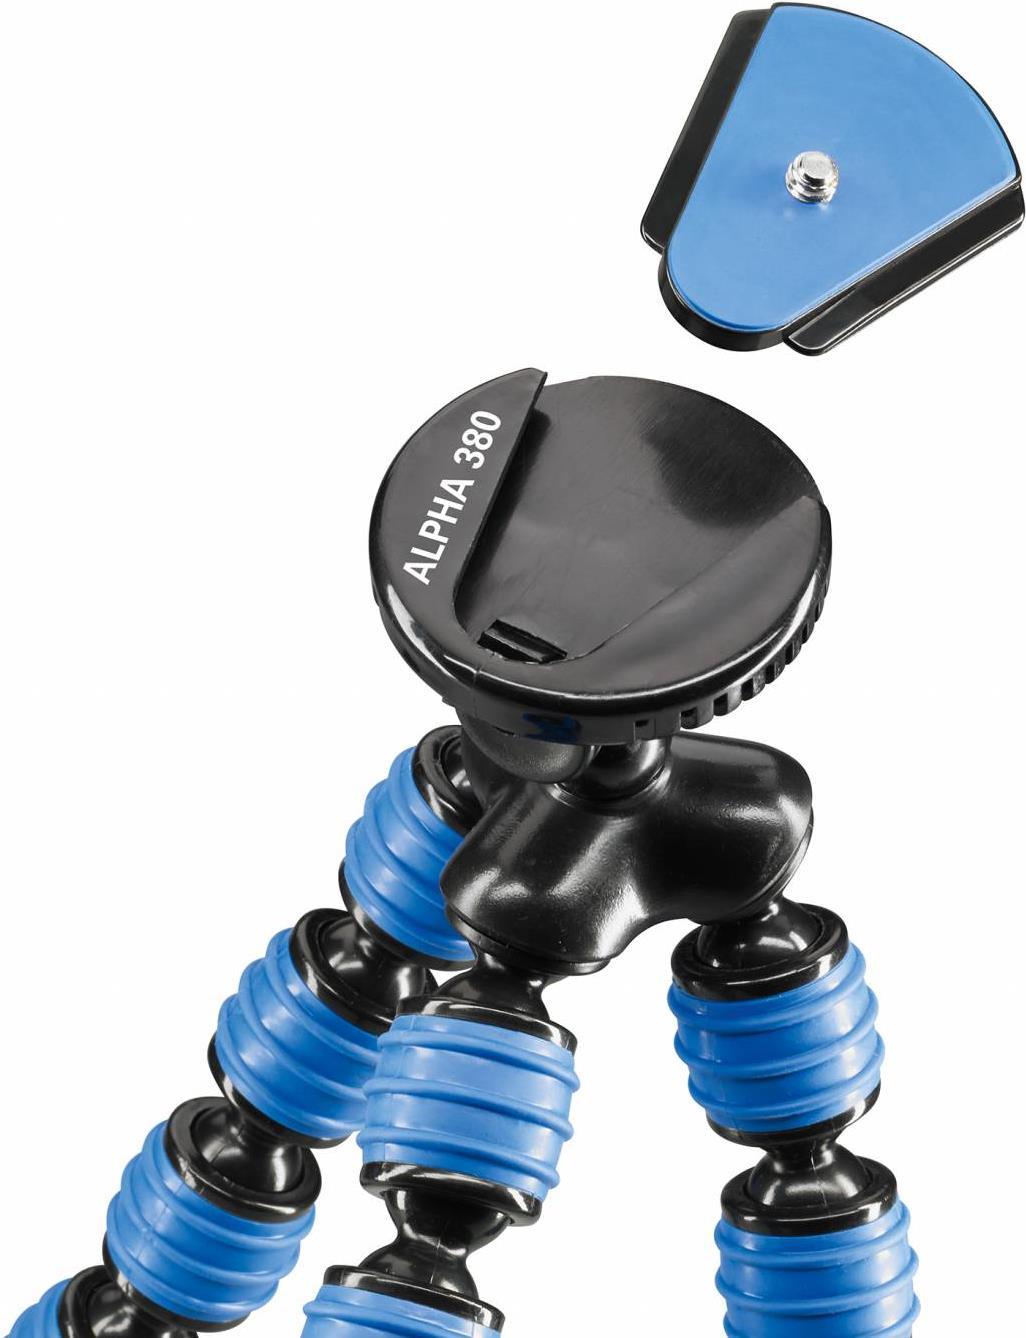 Cullmann Alpha 380 Mobile Flexibles Ministativ mit Smartphone-Halterung, blau, Tragfähigkeit 1,5 kg, 267g leicht, 380 Mobile (30 cm), 50029